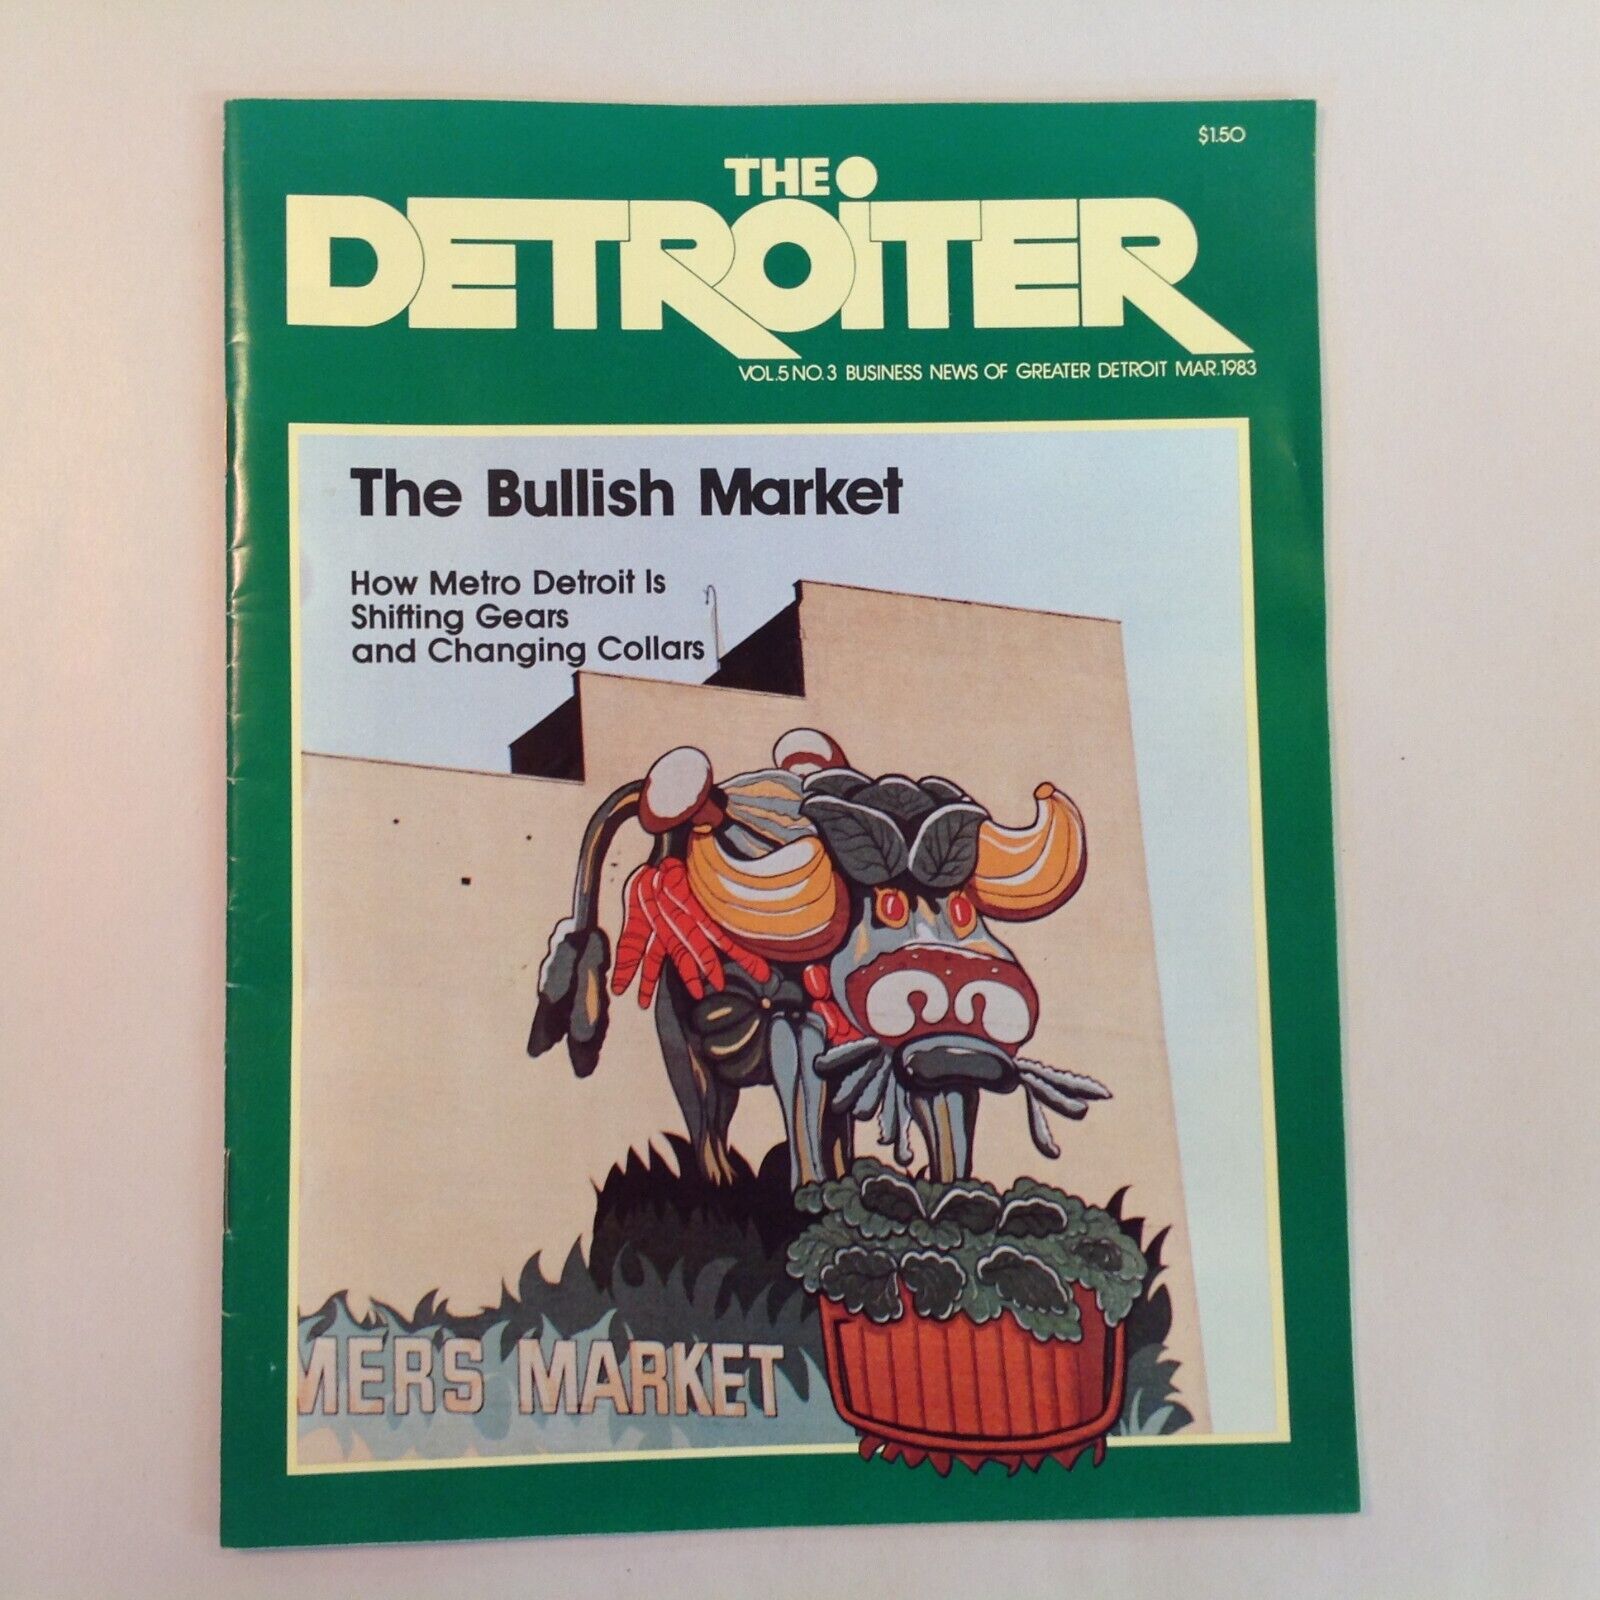 Vtg Mar 1983 The Detroiter Magazine Metro Detroit Bullish Market Business News